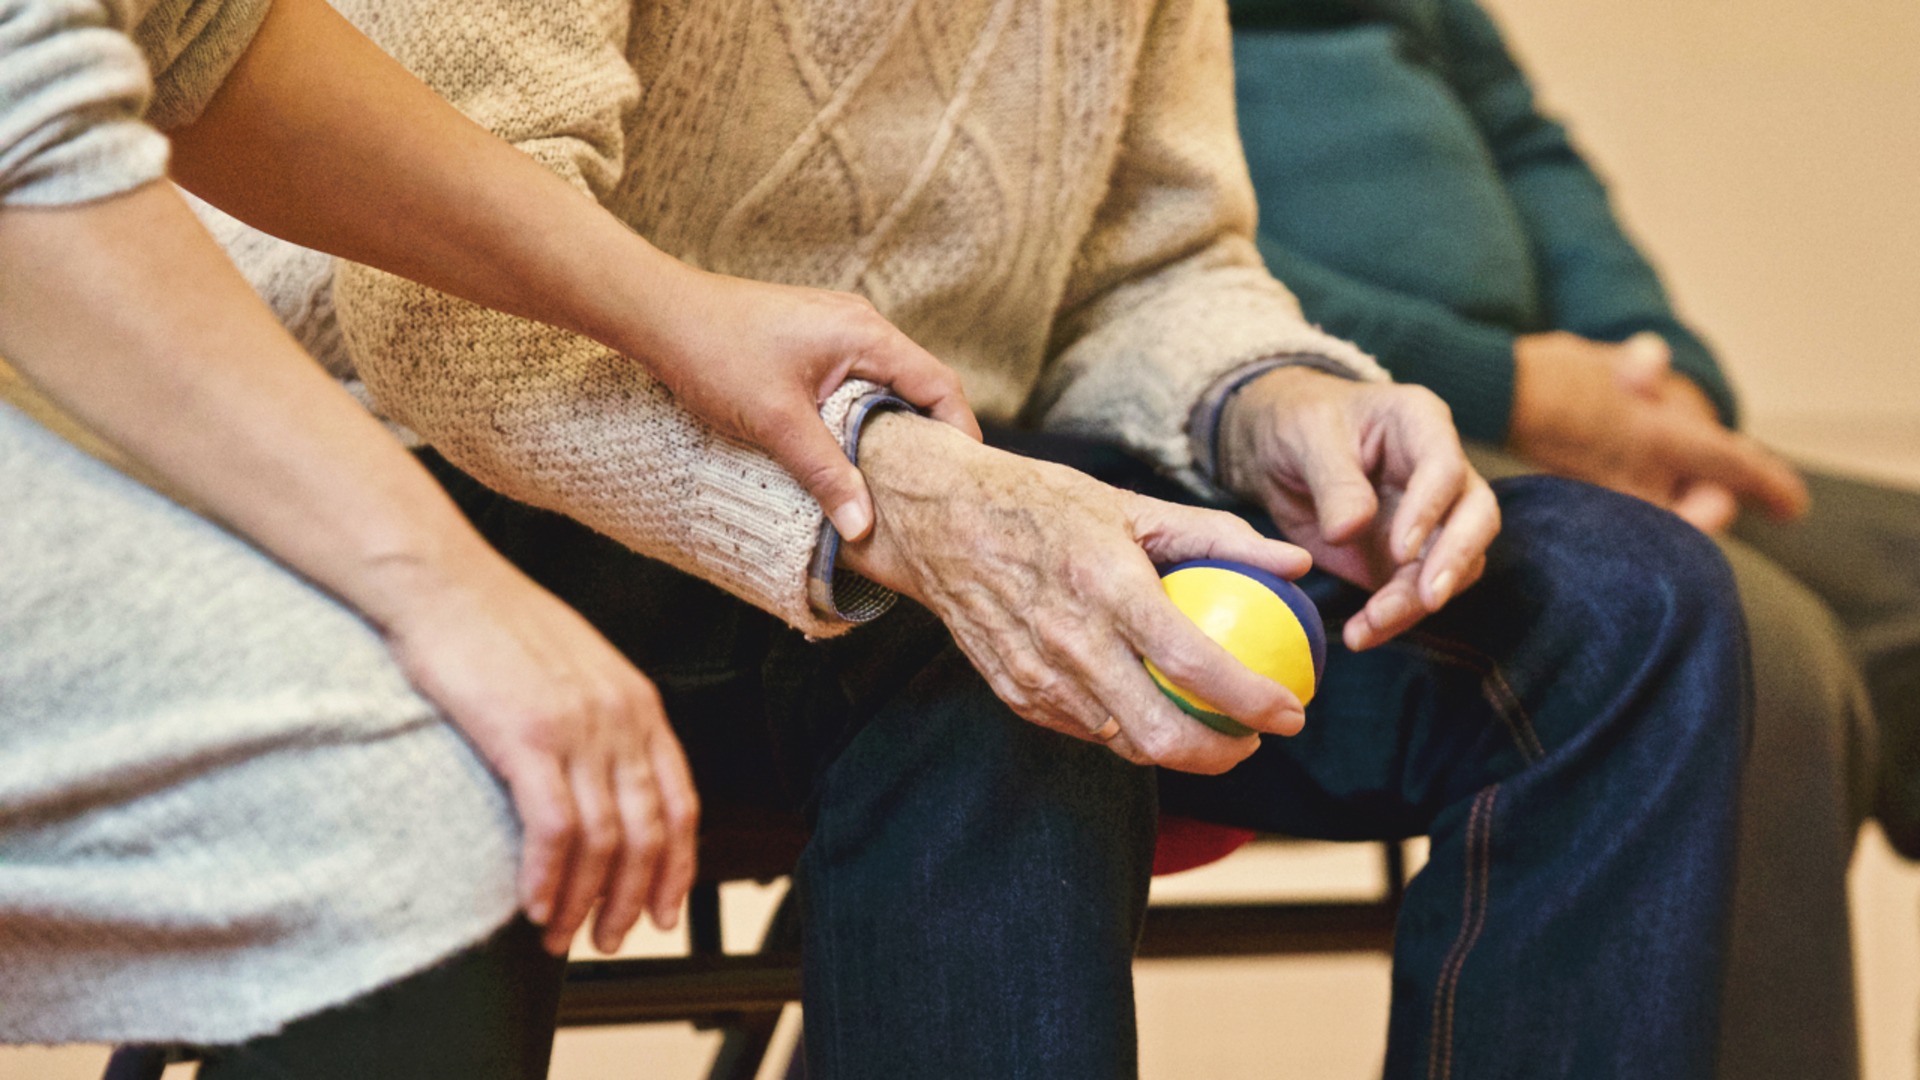 Servicios sociales para personas mayores: cuidar al que cuida